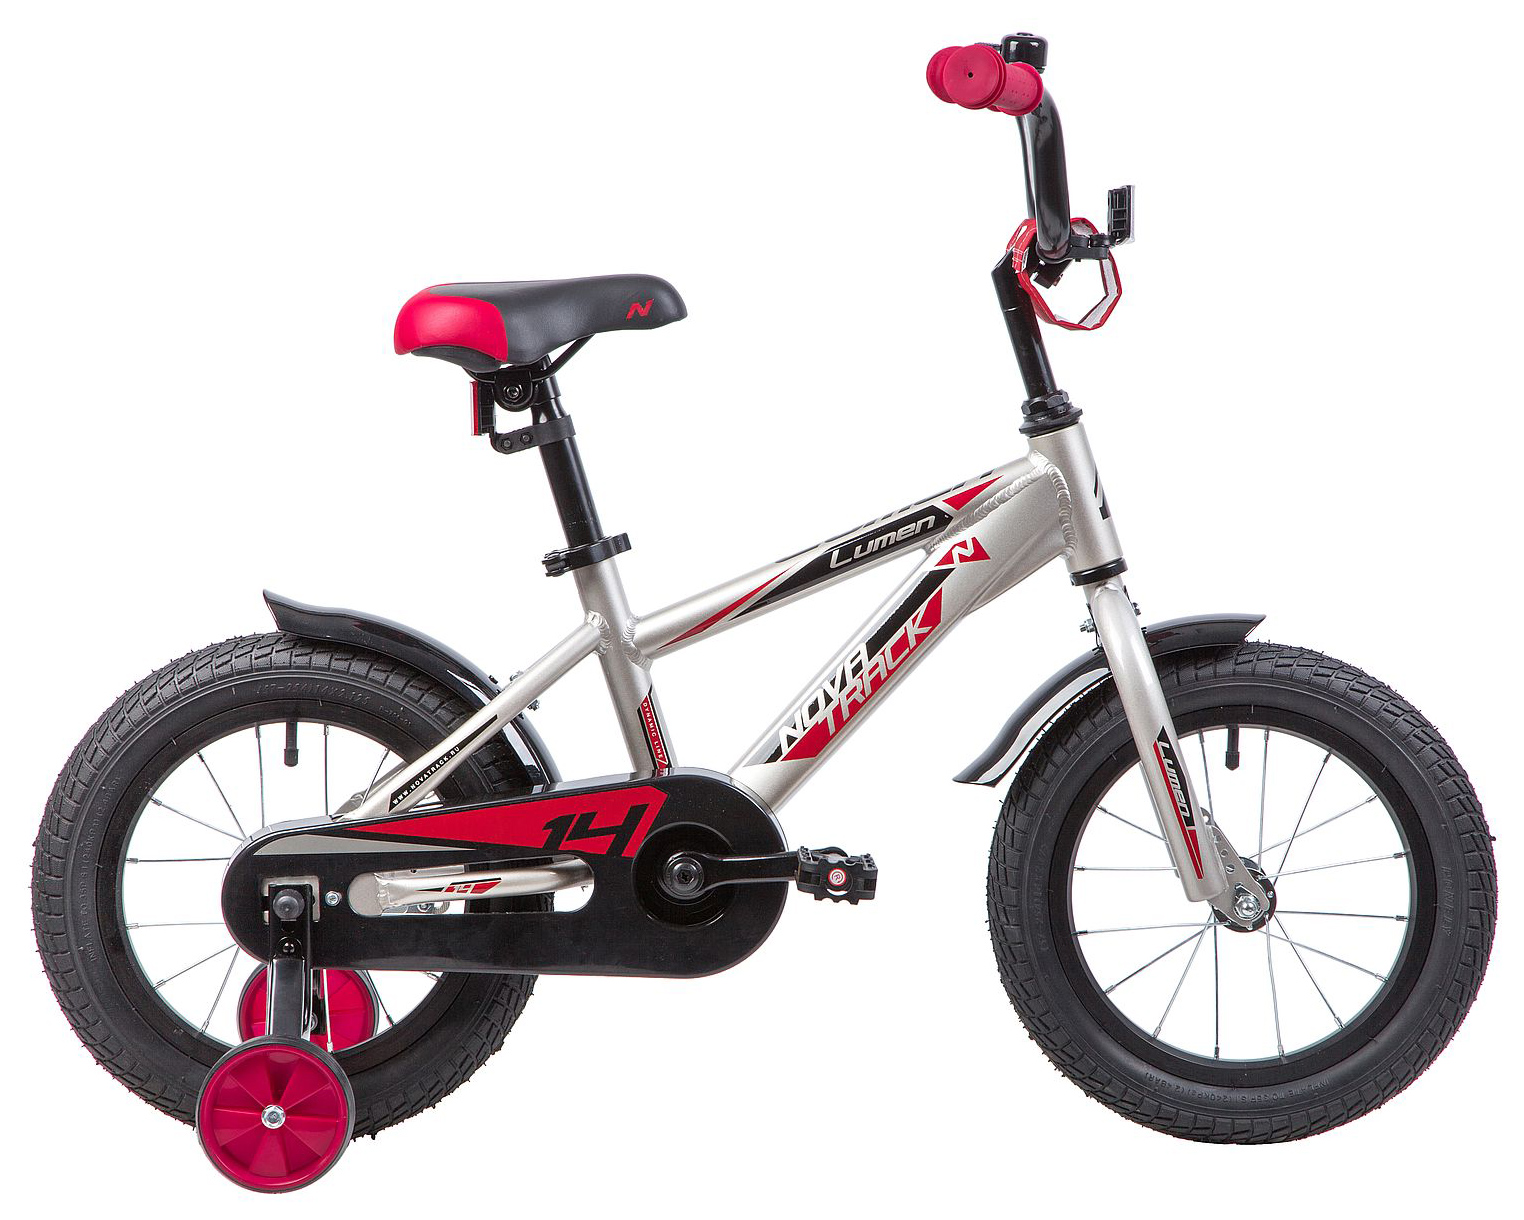  Отзывы о Детском велосипеде Novatrack Lumen 14 2019